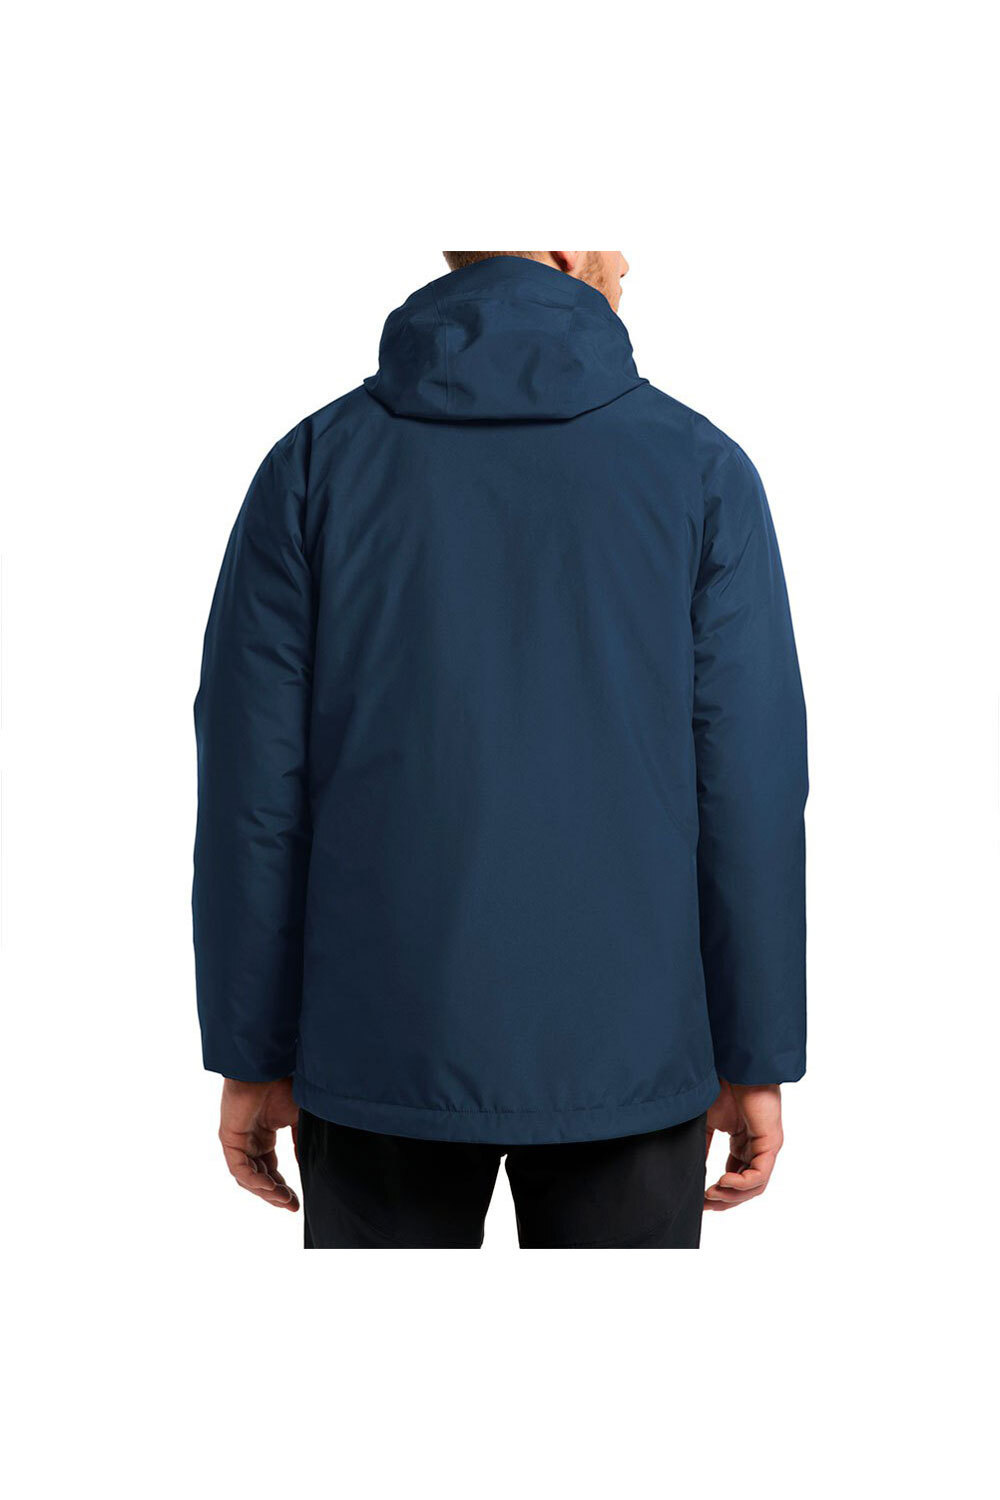 Haglofs chaqueta impermeable insulada hombre Eldstad 3-in-1 Mimic GTX Jacket Men vista trasera